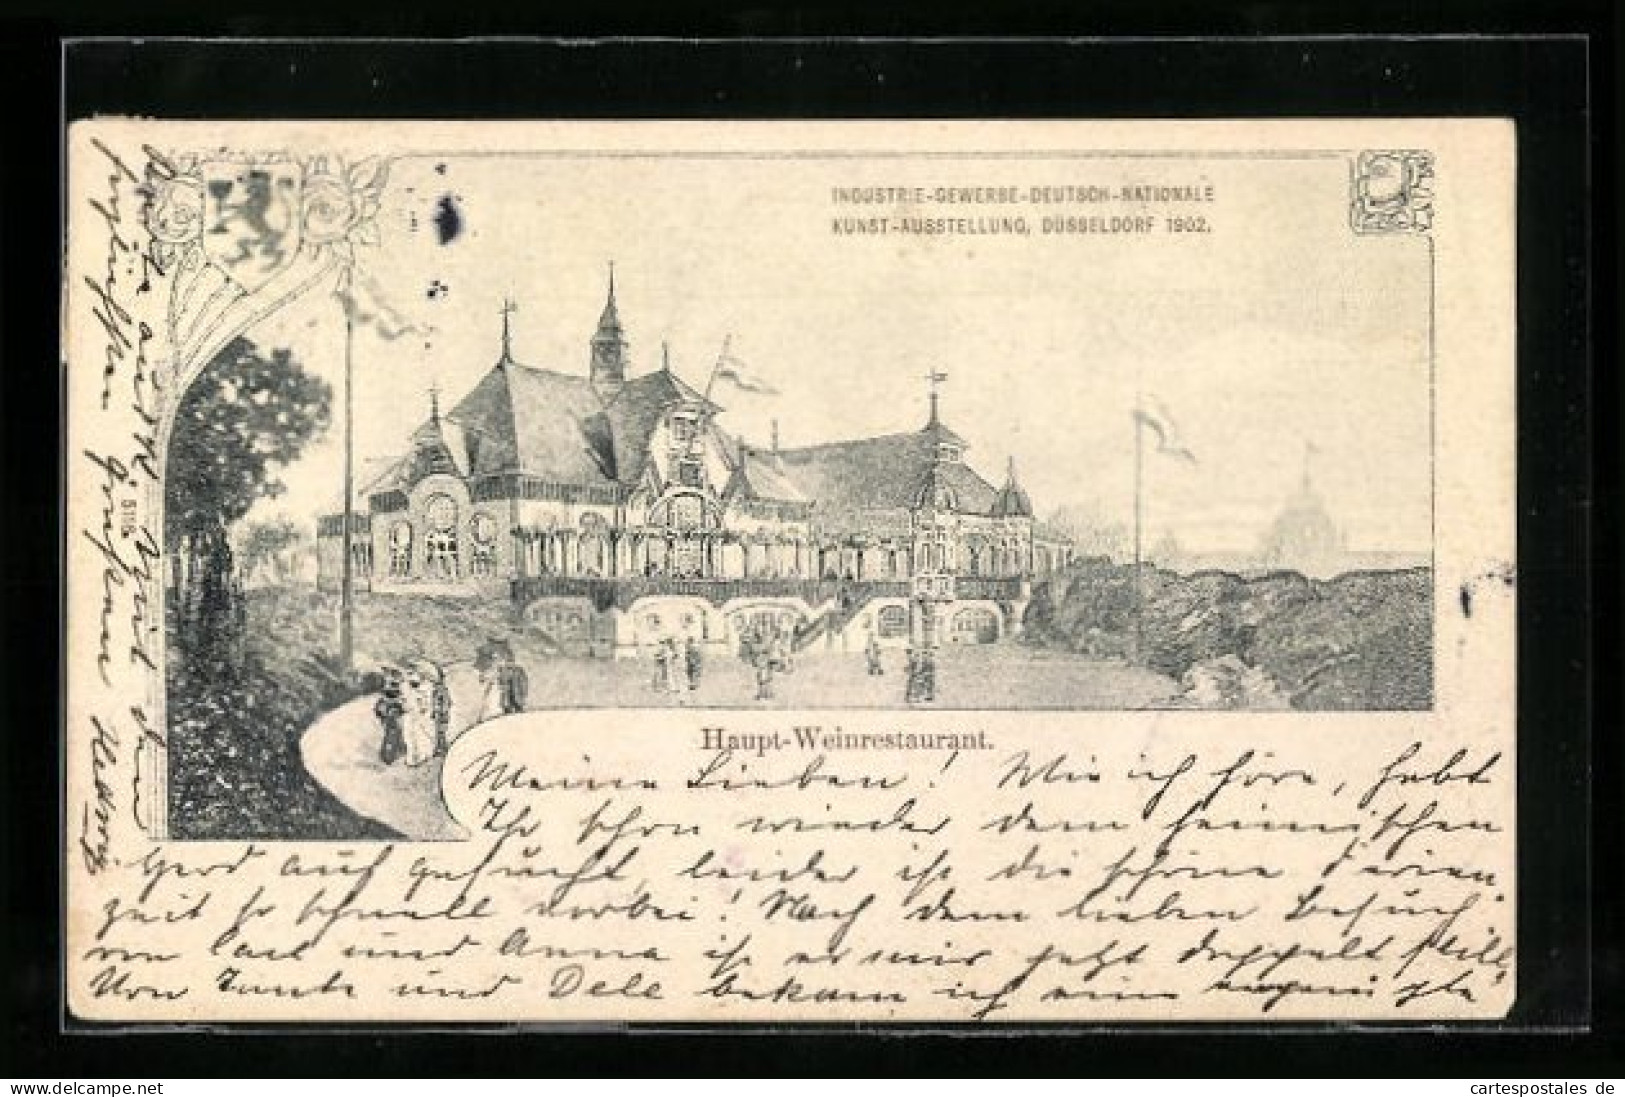 AK Düsseldorf, Industrie-, Gewerbe-, Deutsch- Nationale Kunstausstellung 1902, Haupt-Weinrestaurant  - Expositions